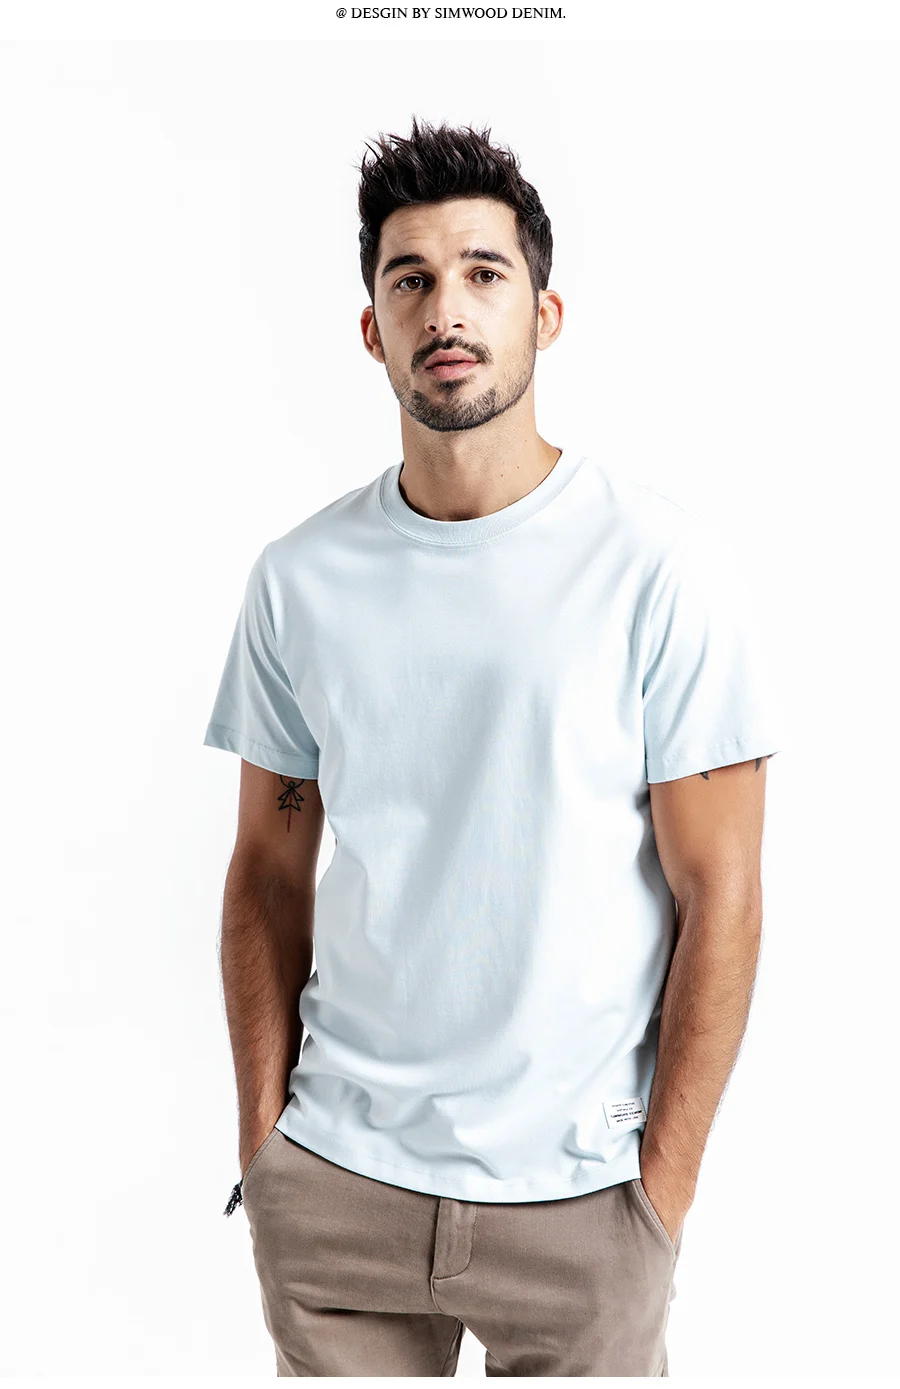 SIMWOOD 2019 летняя новая футболка мужская 100% хлопок сплошной цвет Повседневная футболка основы с круглым вырезом высокое качество плюс размер